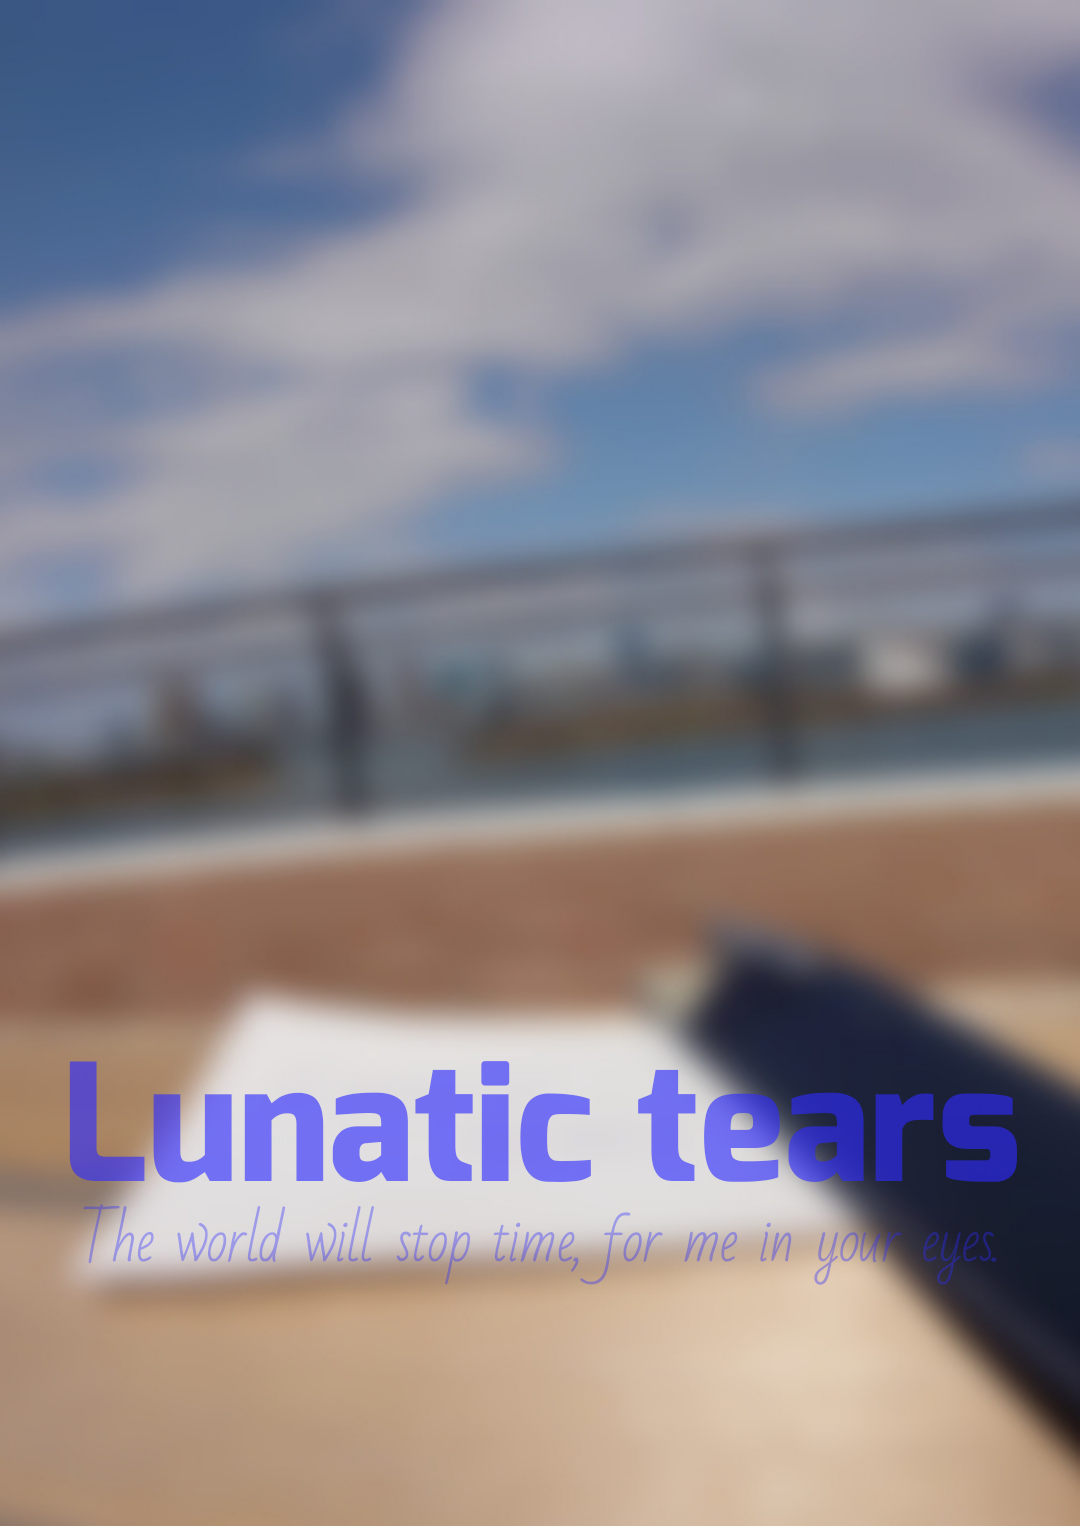 Lunatic tears (ルナティックティアーズ)